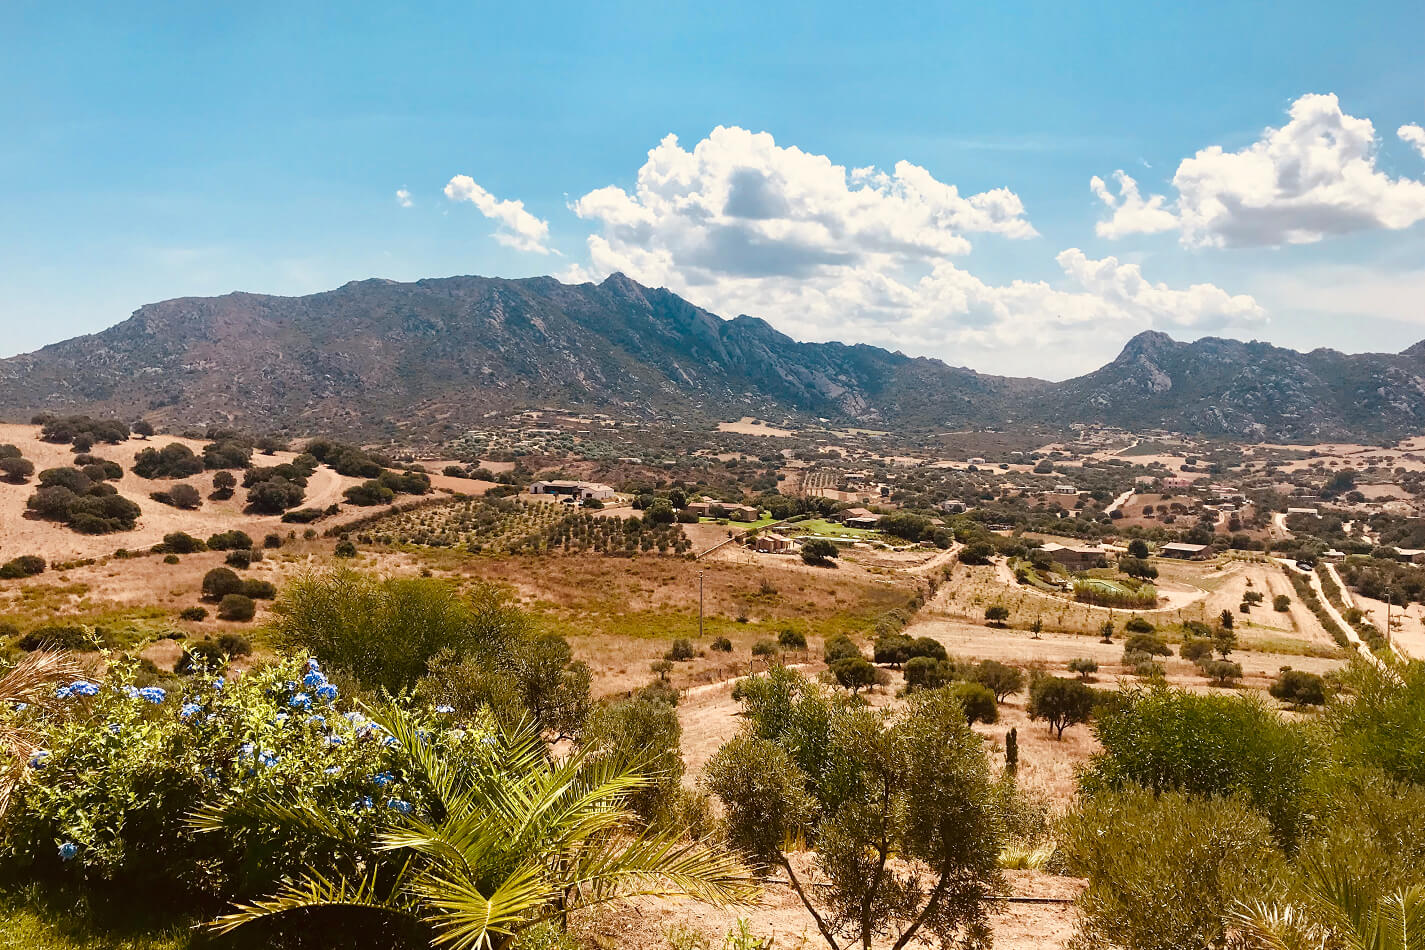 Ein Panoramablick auf eine ländliche Landschaft mit sanften Hügeln, einigen verstreuten Gebäuden und felsigen Bergen unter einem teilweise bewölkten Himmel. Im Vordergrund sind grüne Vegetation und einige leuchtend blaue Blumen zu sehen, die typisch für die Hotspots Sardiniens sind.